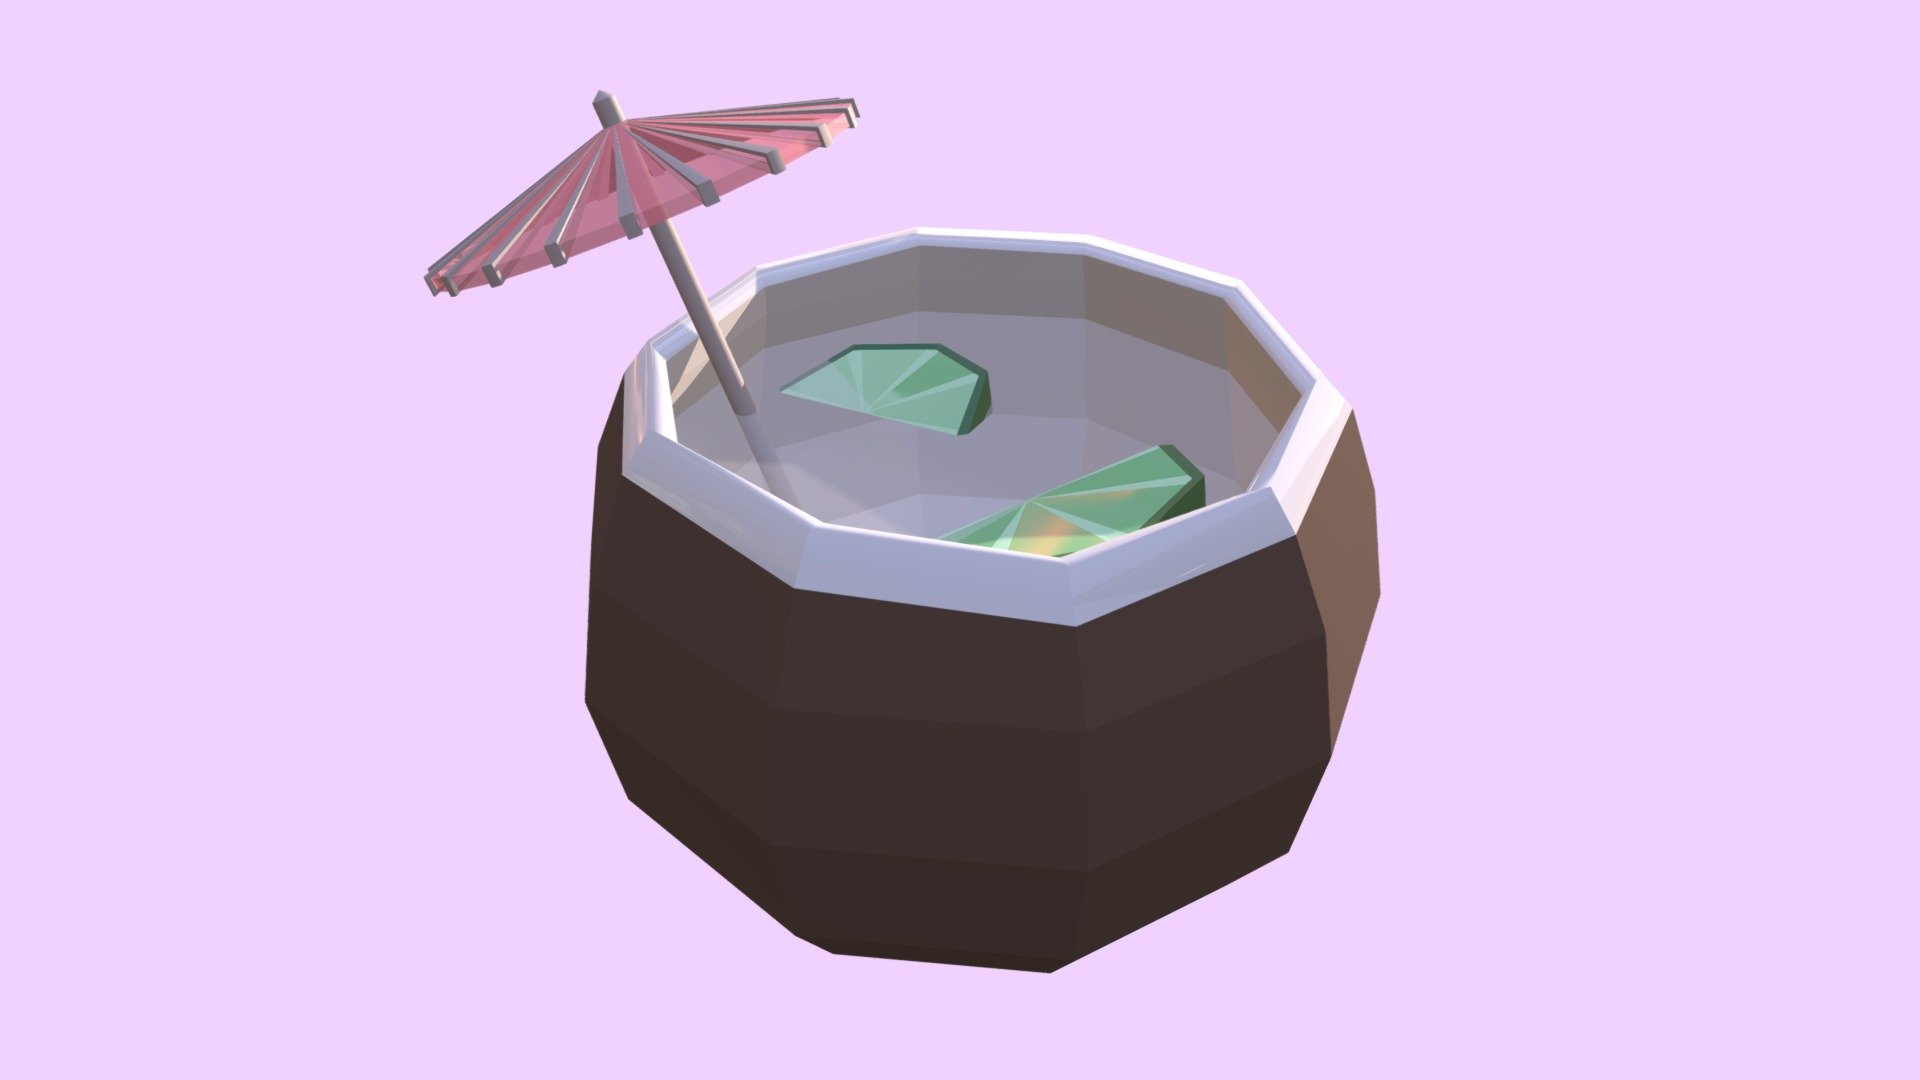 low-poly coconut drink complete with paper umbrella and lime slices - coconut drink - 3D model by samsamvaldez 3d model